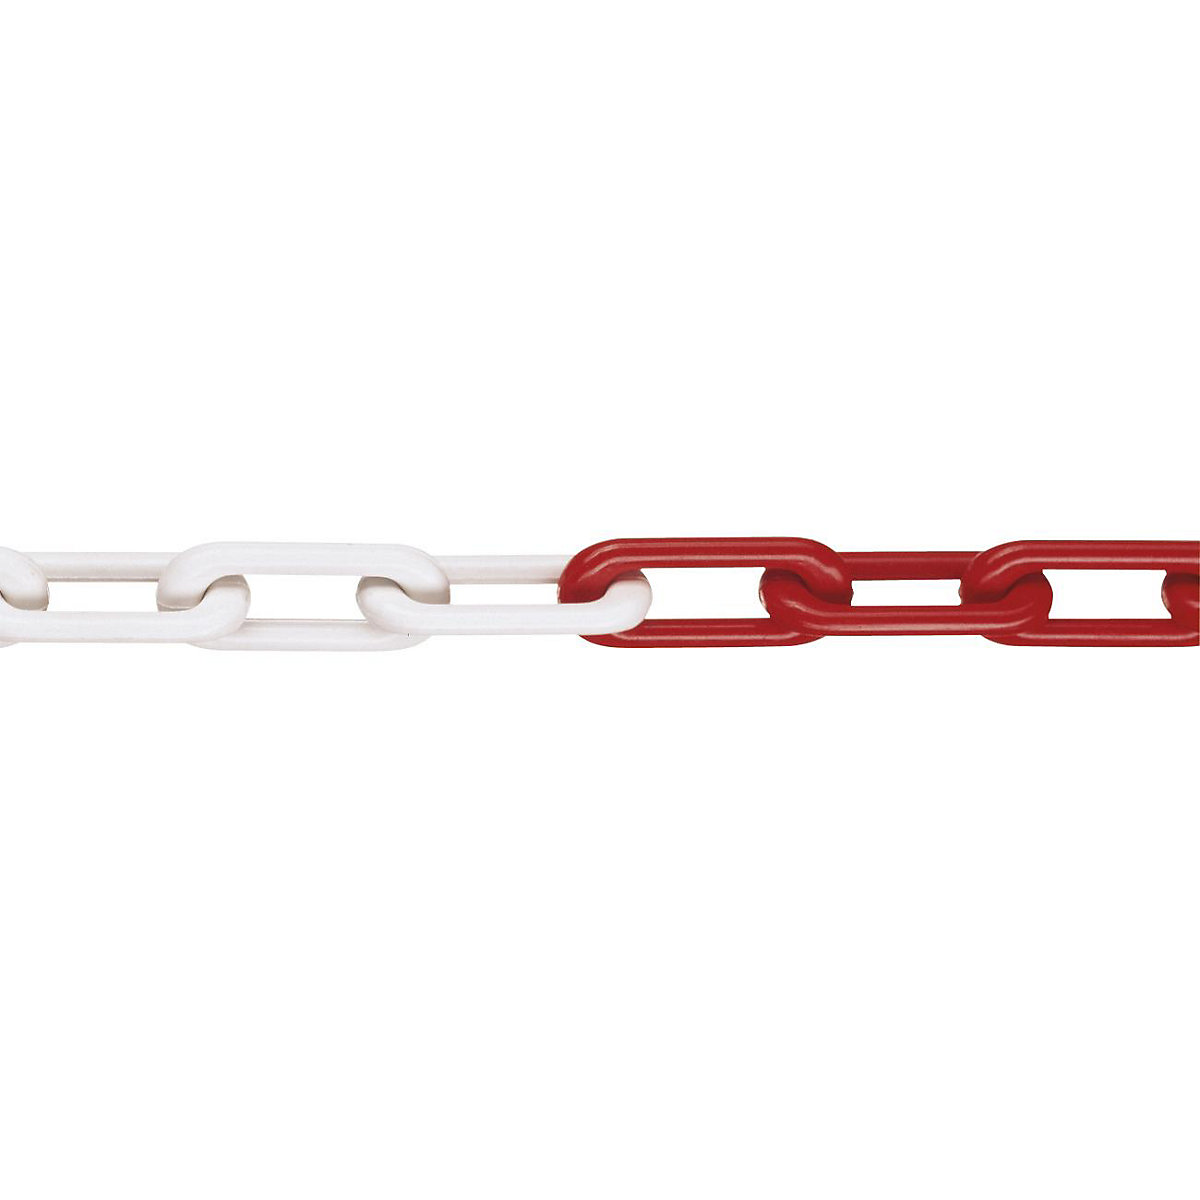 Kakovostna najlonska veriga, kakovost MNK 8, dolžina 25 m, rdeče-bela-3